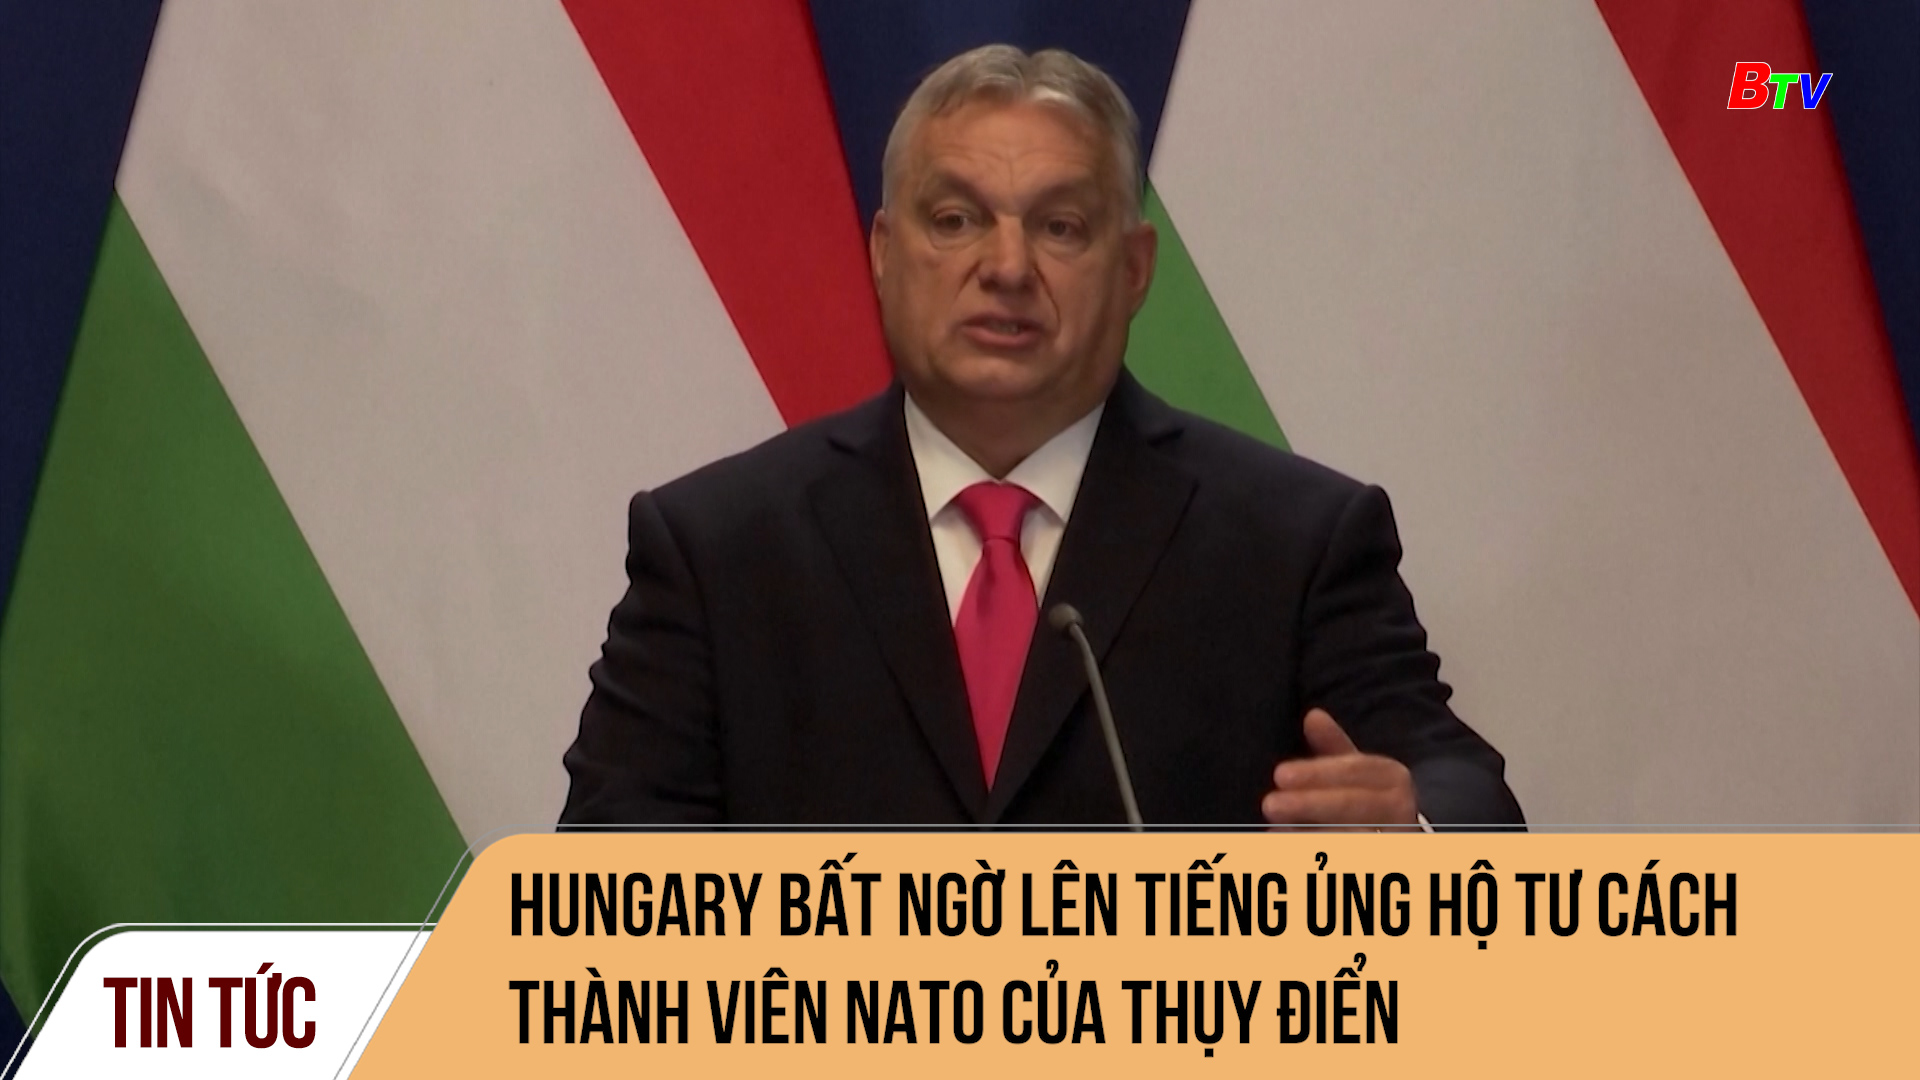 Hungary bất ngờ lên tiếng ủng hộ tư cách thành viên NATO của Thụy Điển